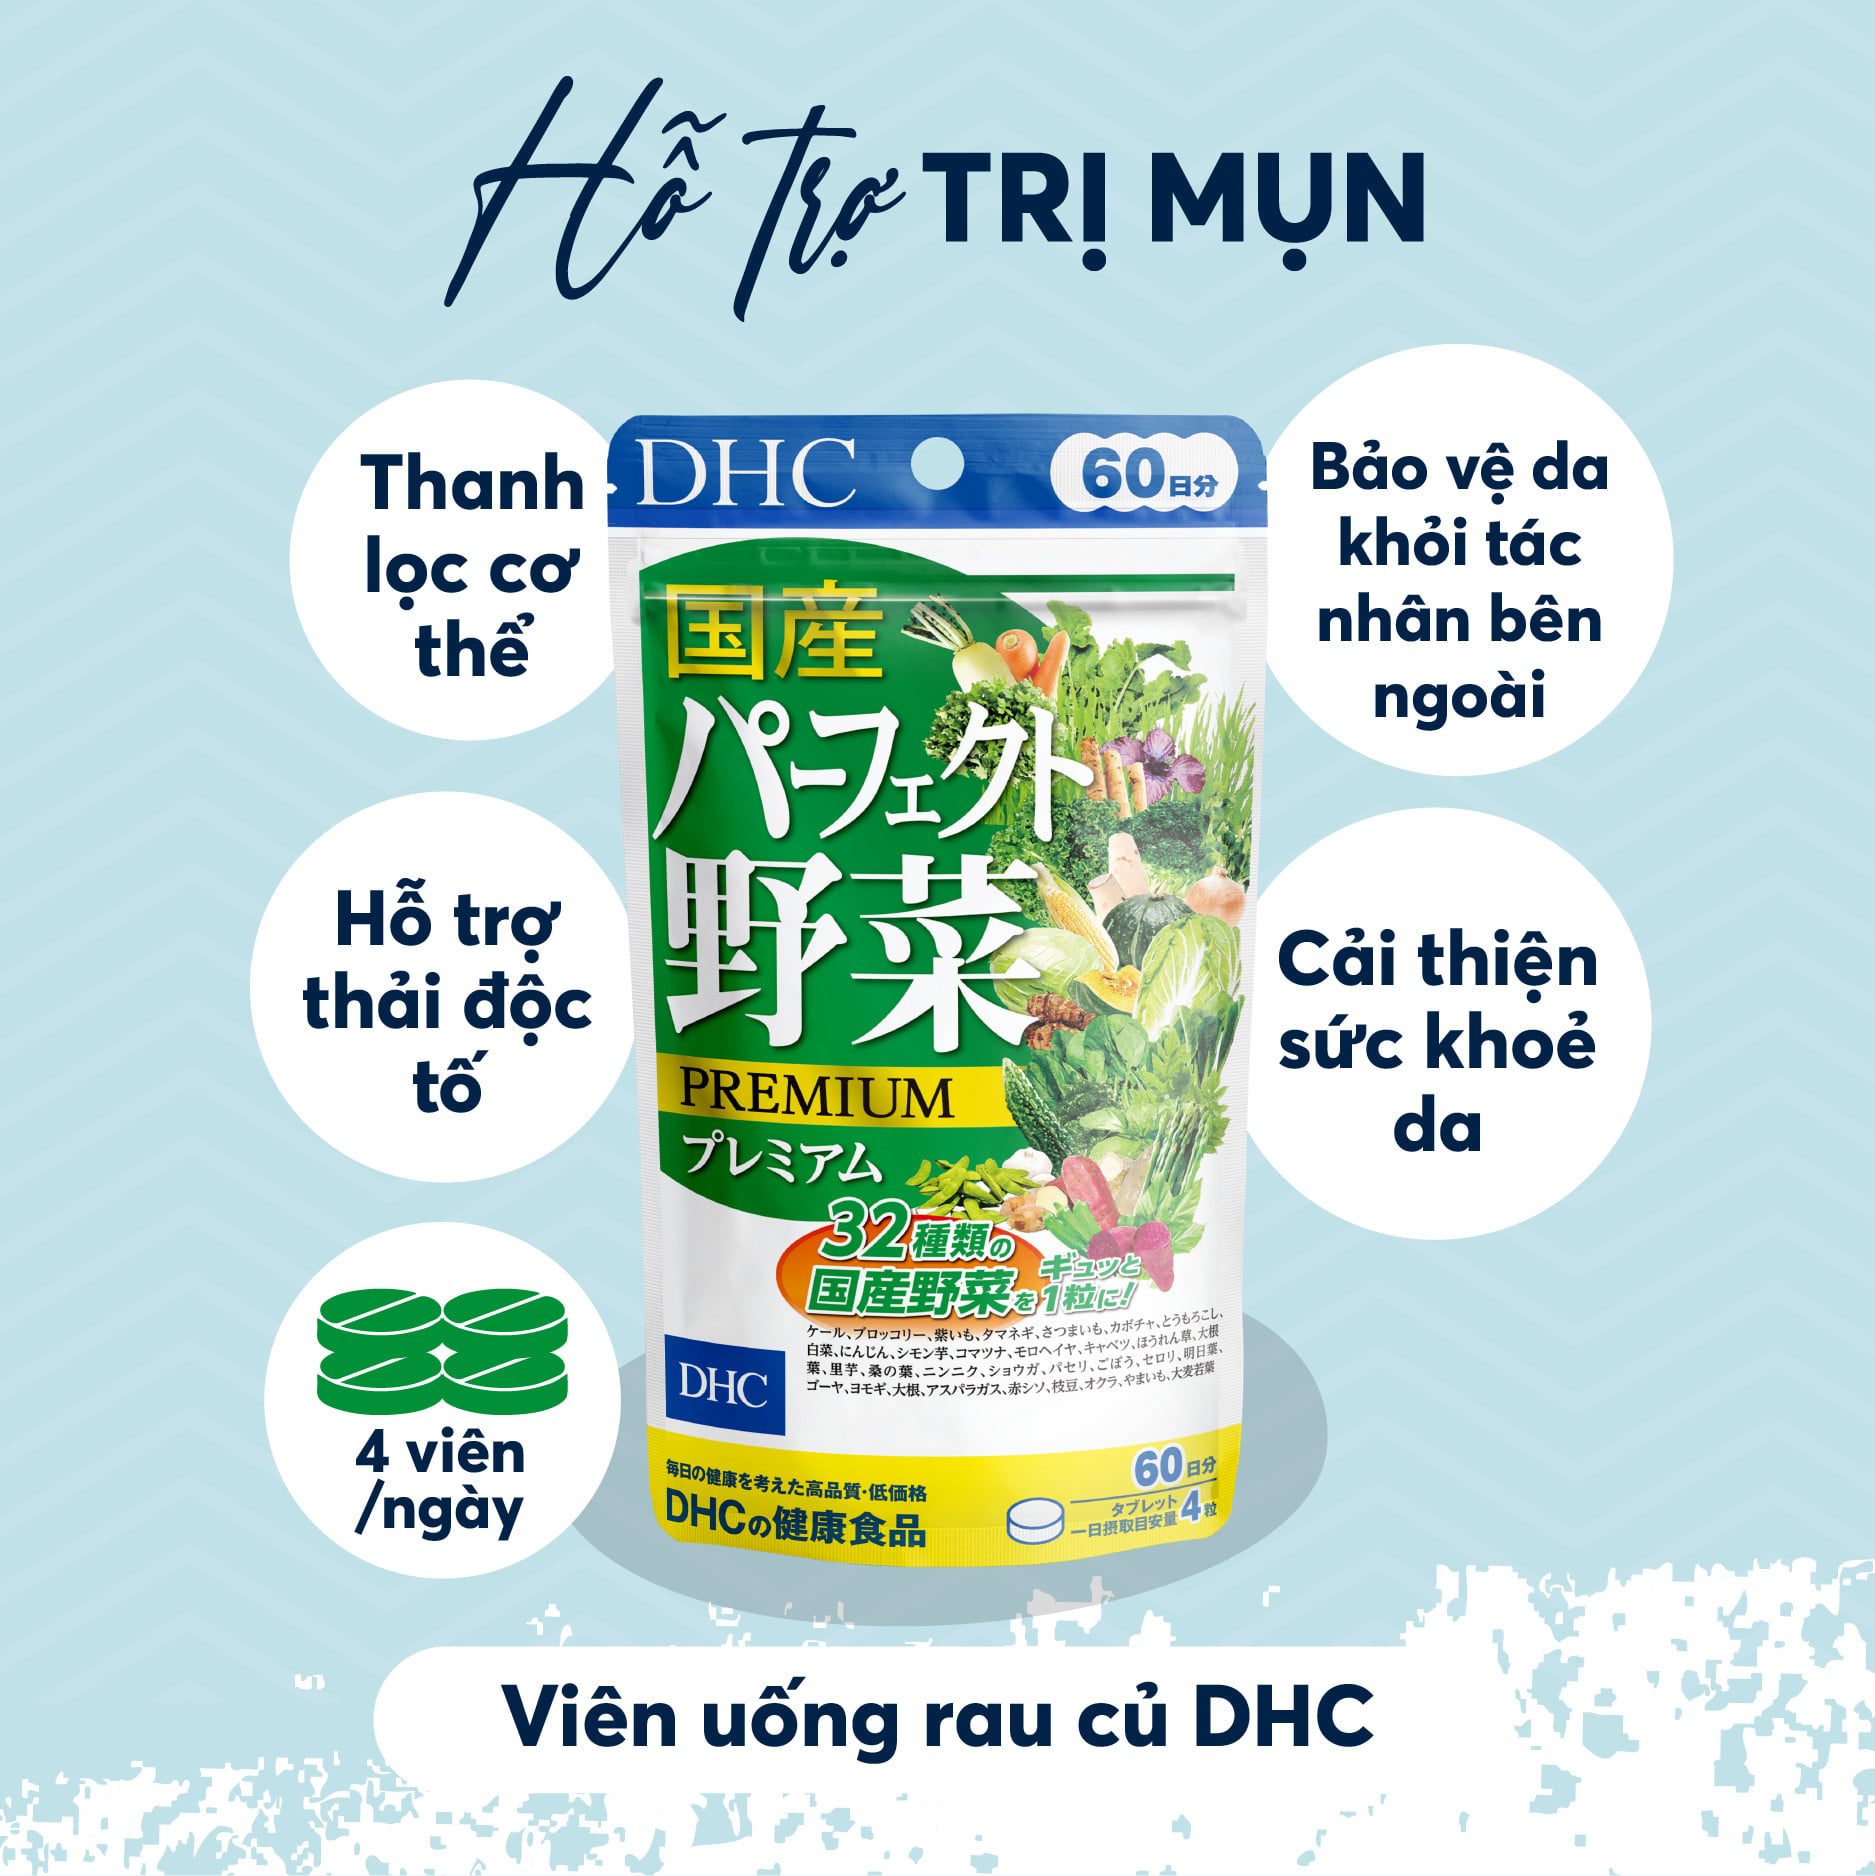 Rau củ tổng hợp DHC Nhật hỗ trợ hệ tiêu hóa, thanh lọc cơ thể, giảm nóng trong, giảm mụn, tăng sức khỏe tổng thể - OZ Slim Store